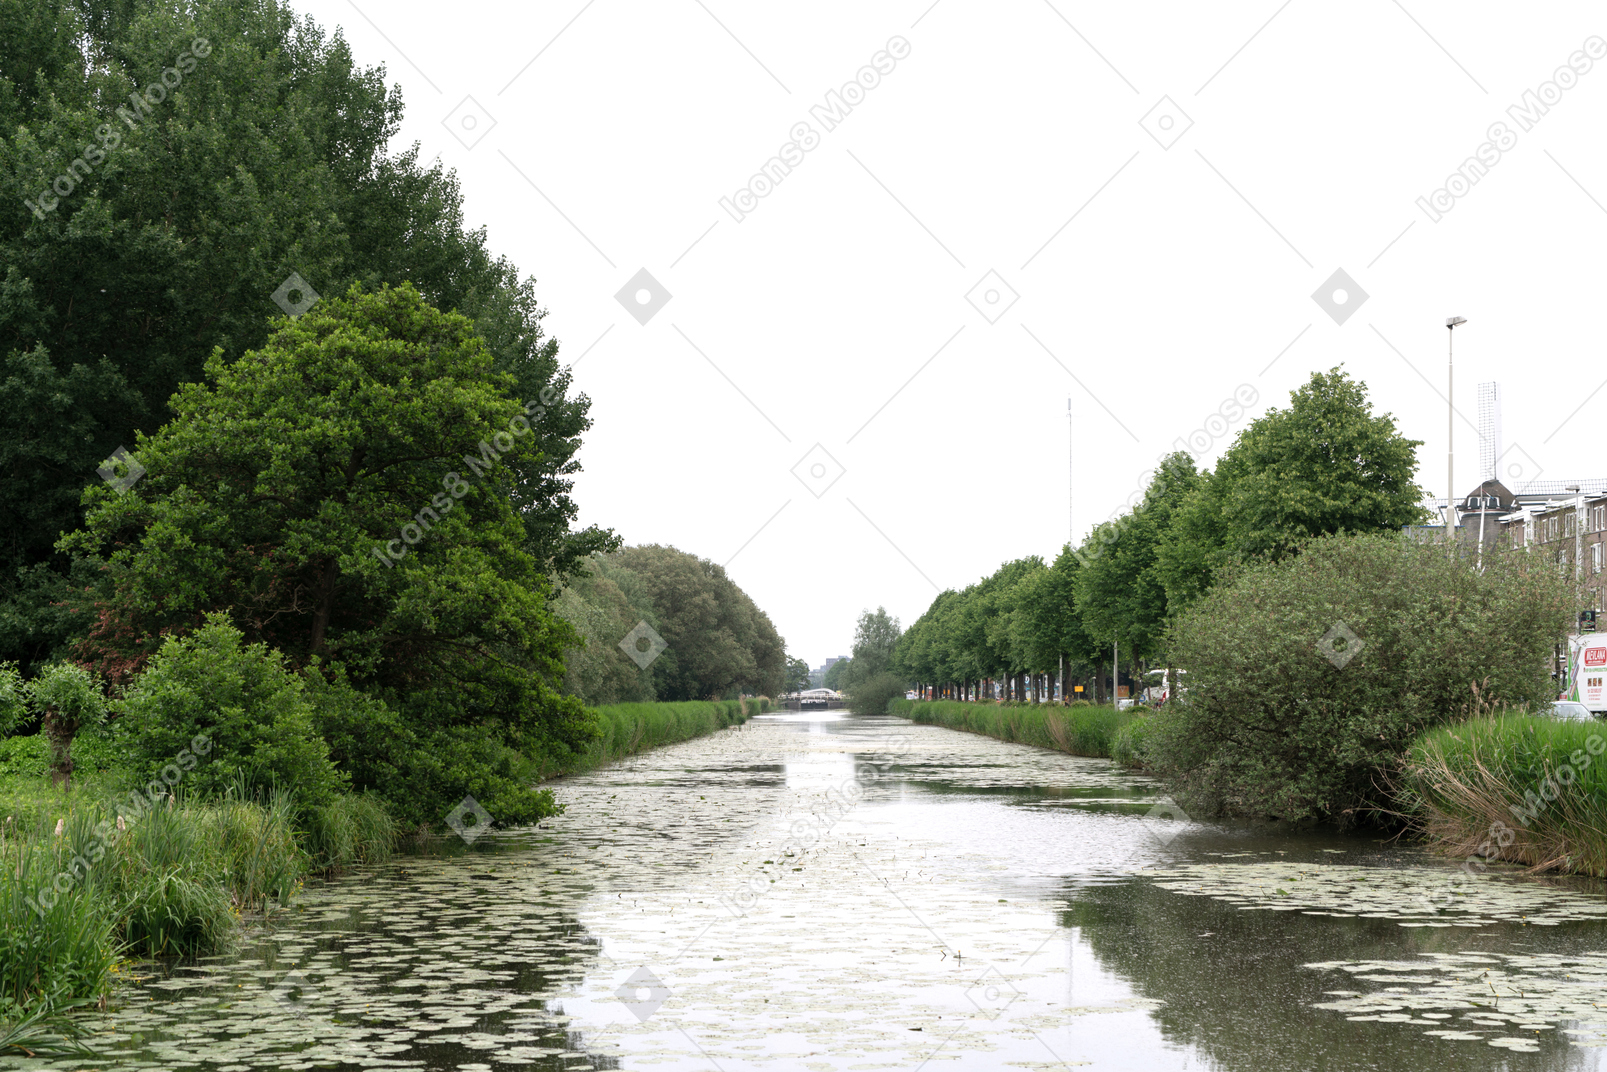 Вид на реку с деревьями по обеим сторонам